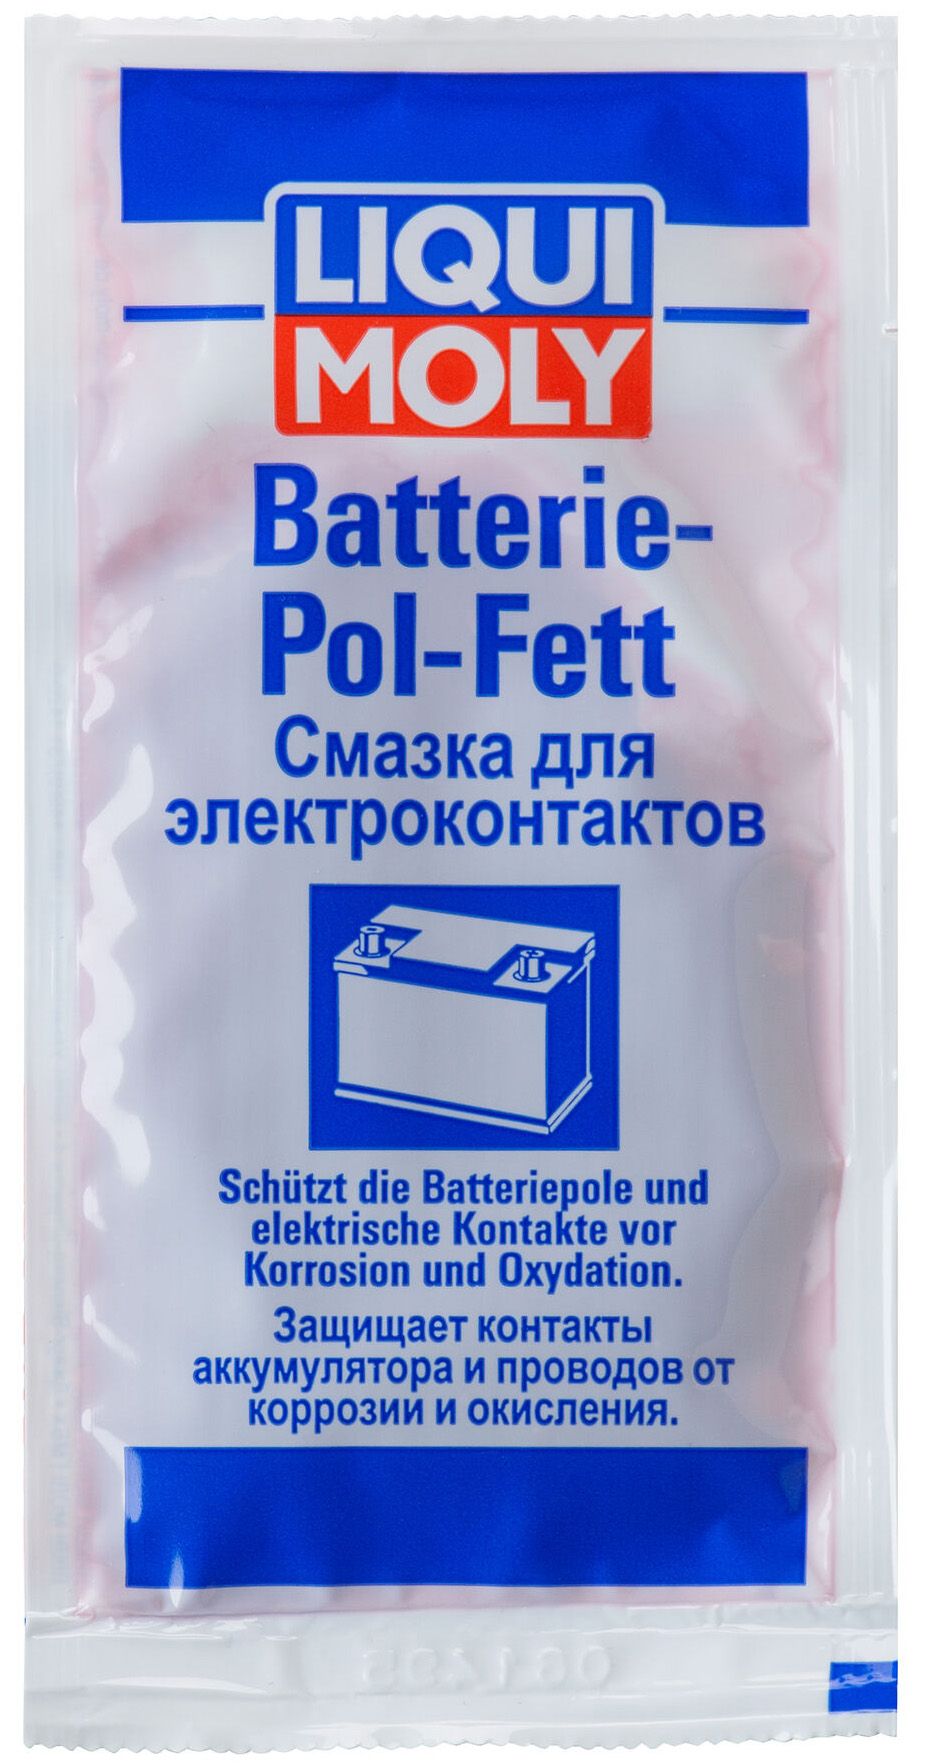 Смазка для электроконтактов Liqui Moly Batterie-Pol-Fett, 0.01л - LIQUI MOLY, Официальный интернет-магазин